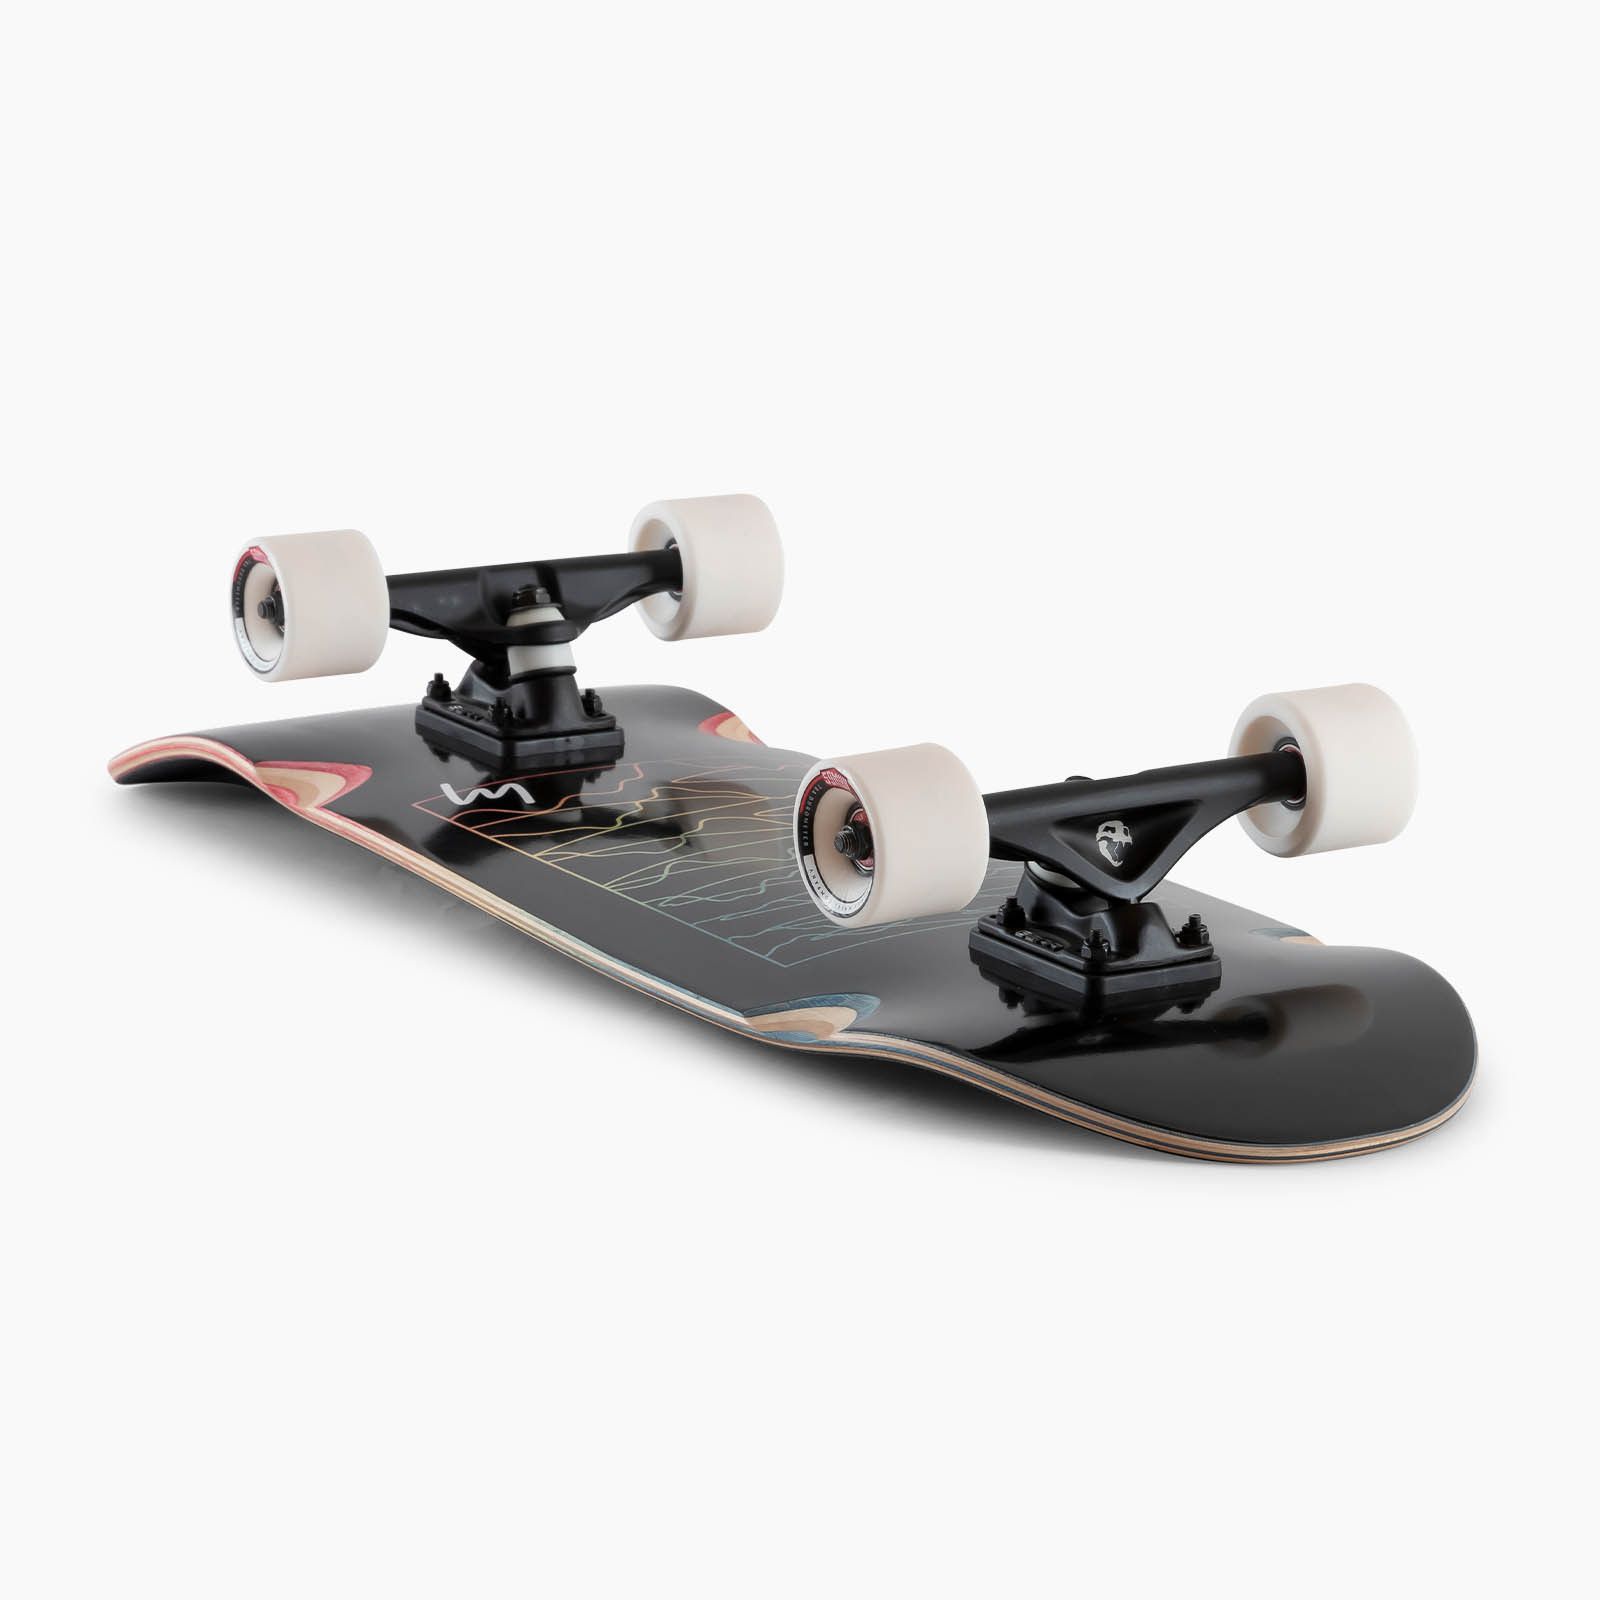 Skateboard complet - Ditch Life Blk Sine Wave 31 X 9.75 Wb 15